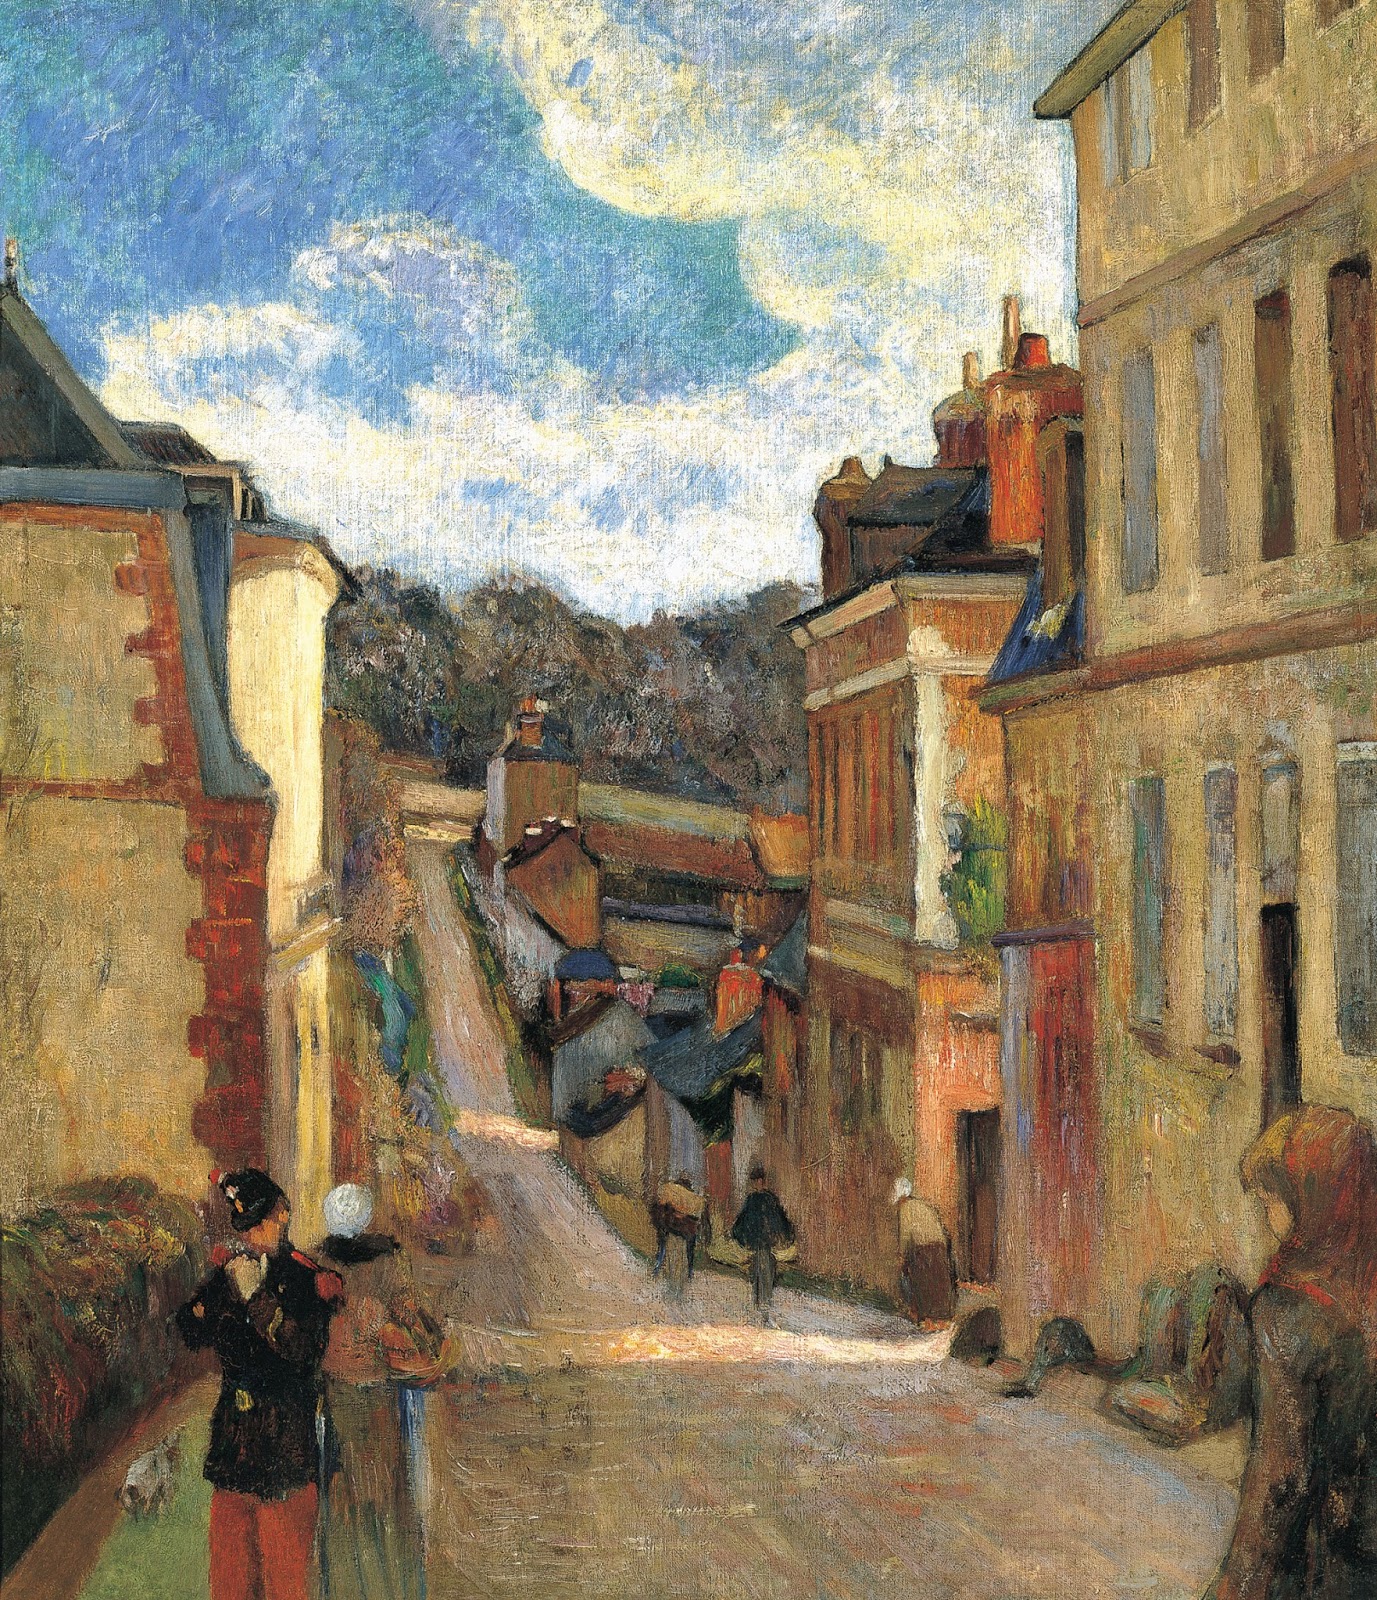 Paul+Gauguin-1848-1903 (354).jpg